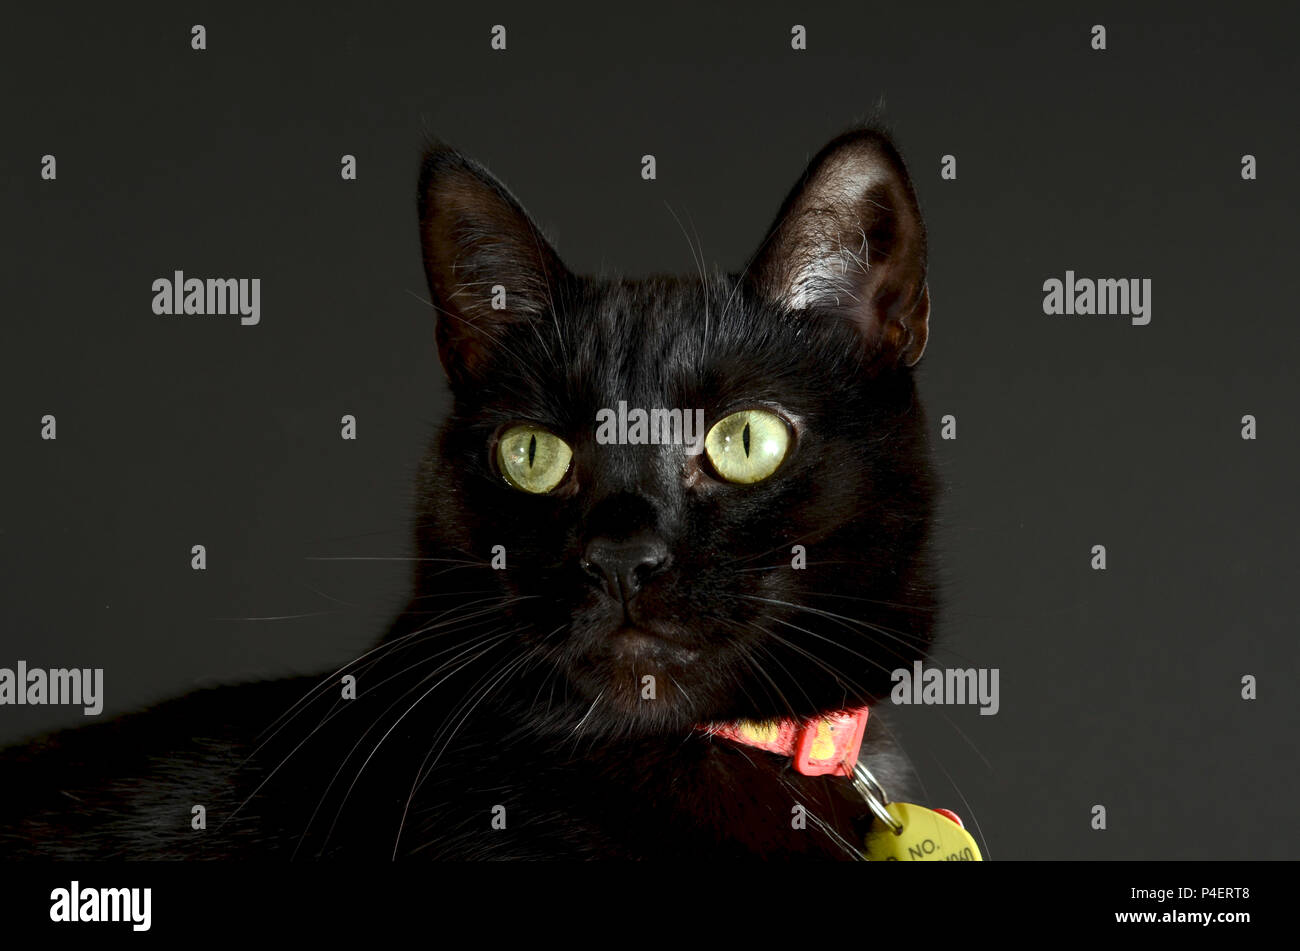 Gatto nero con gli occhi verdi che indossa un collare, contro uno sfondo grigio. Foto Stock